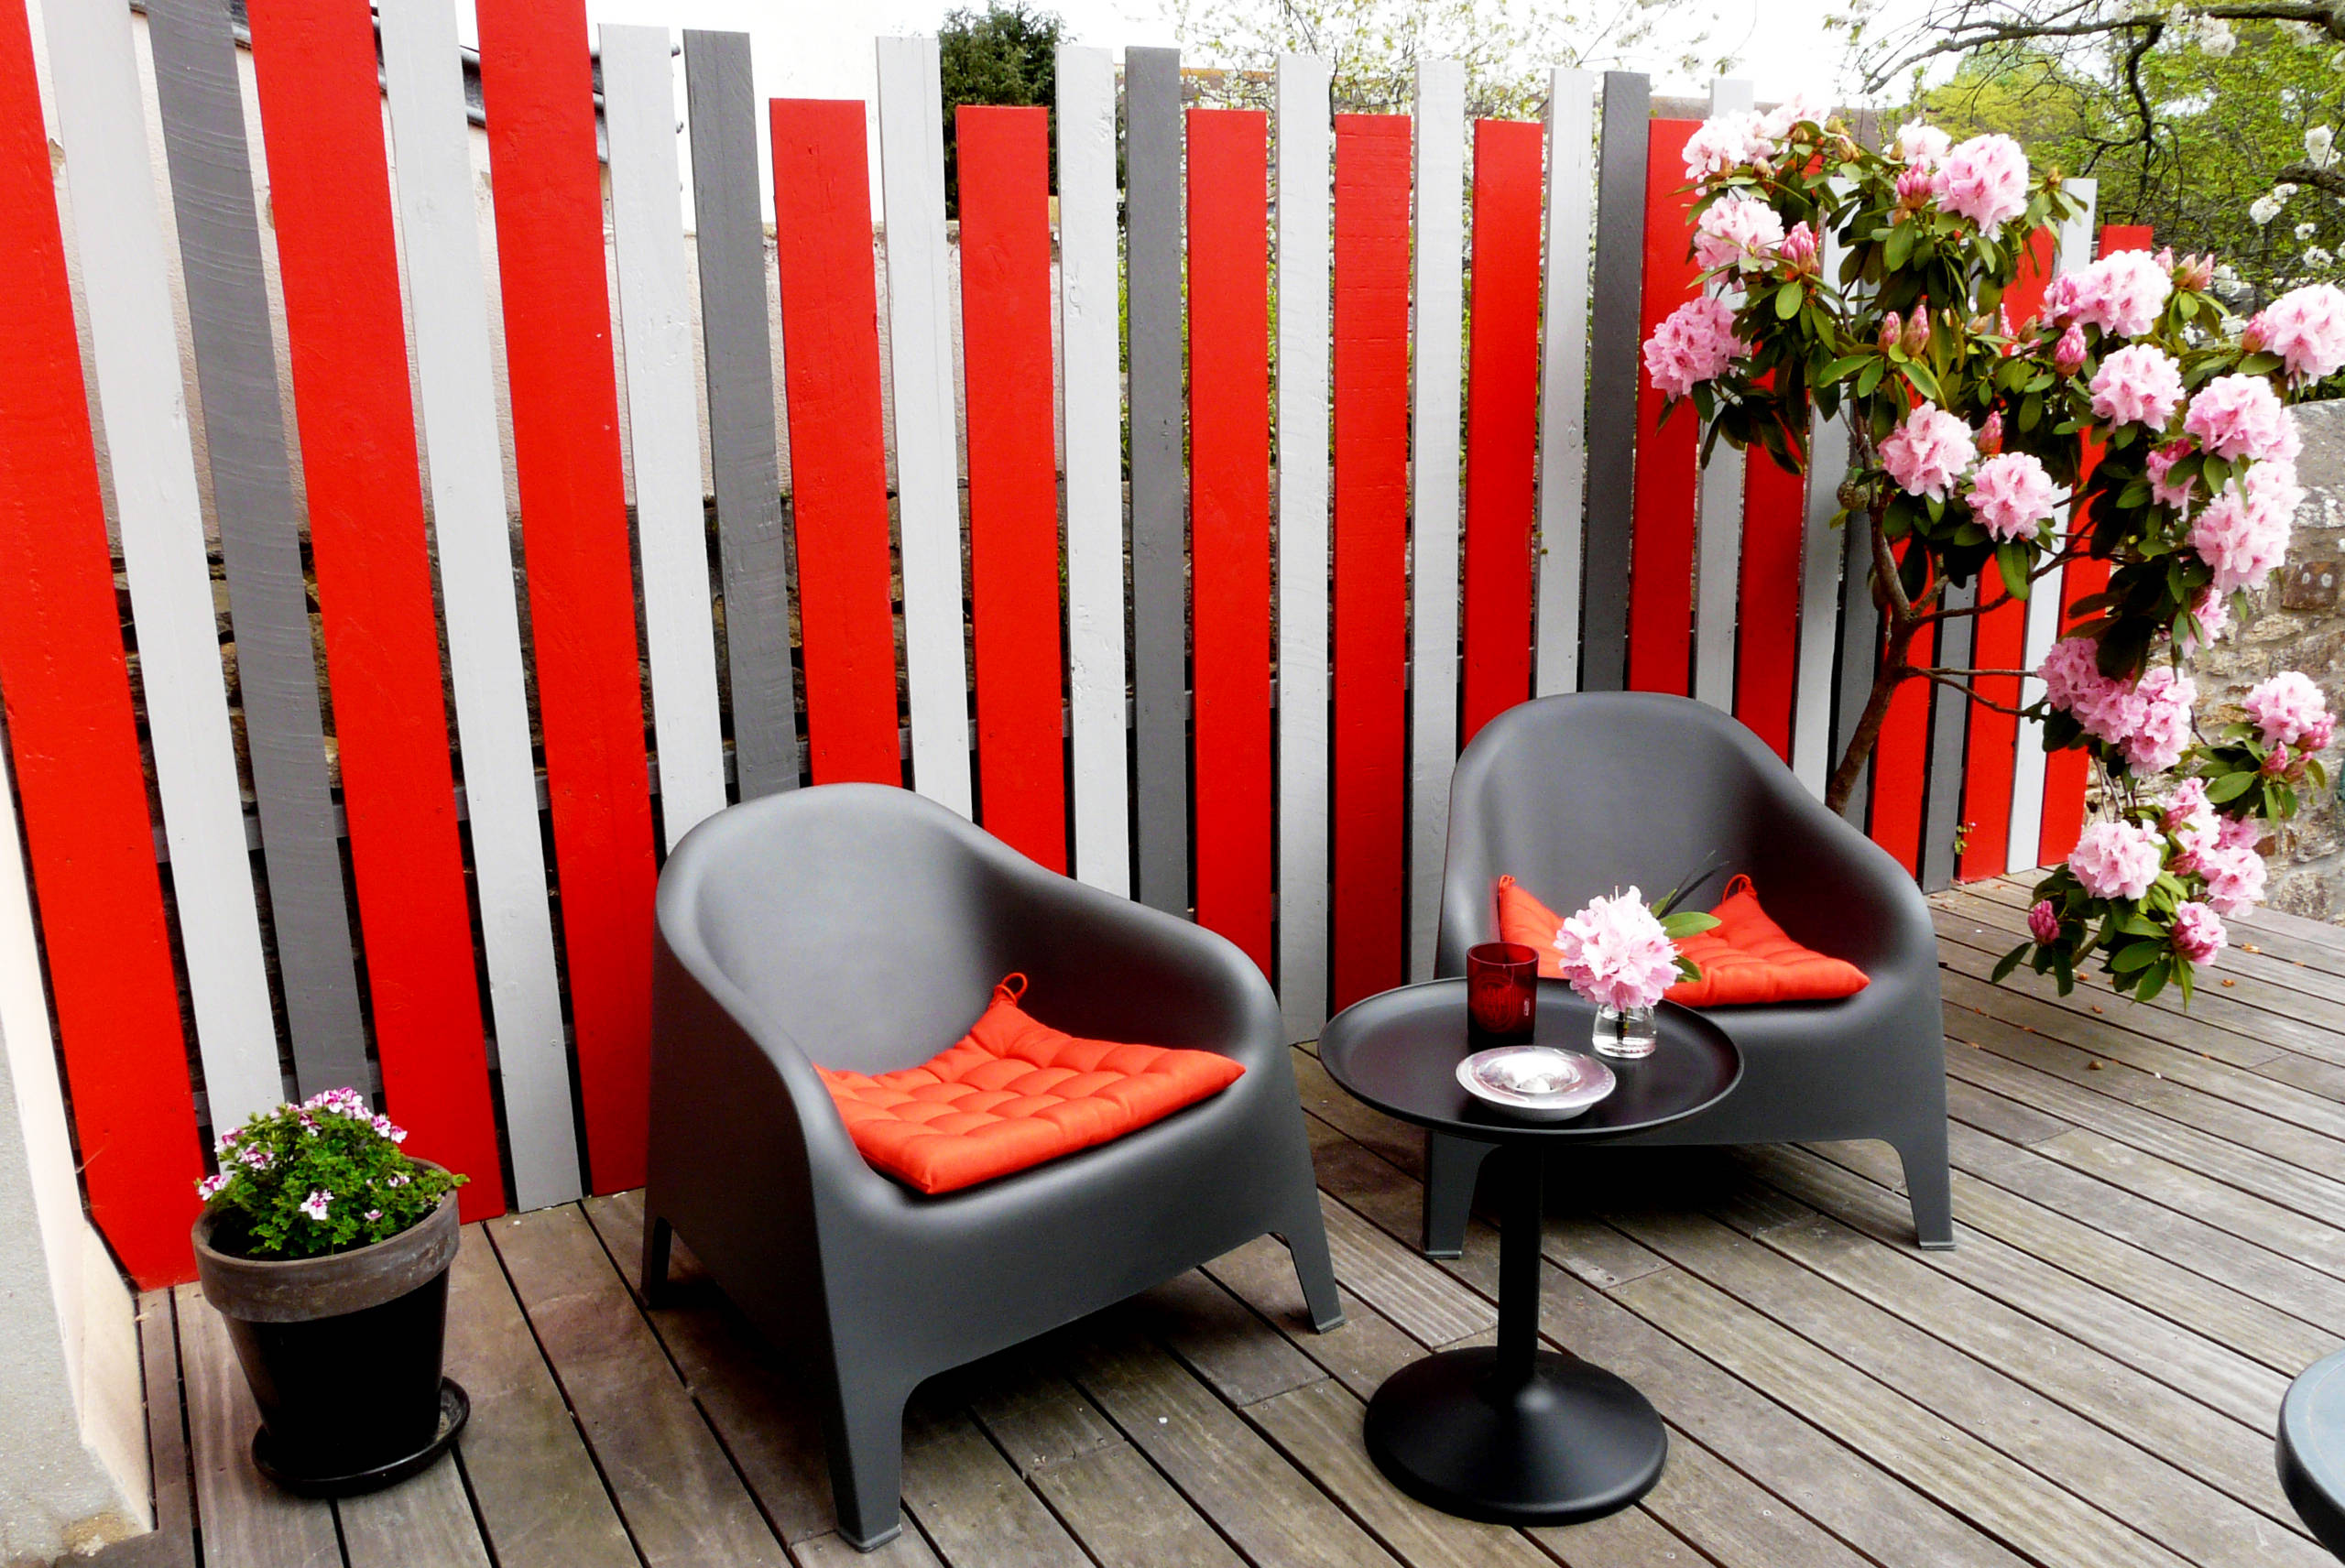 Terrasse gestalten mit Lack und Farbe – 12 Ideen